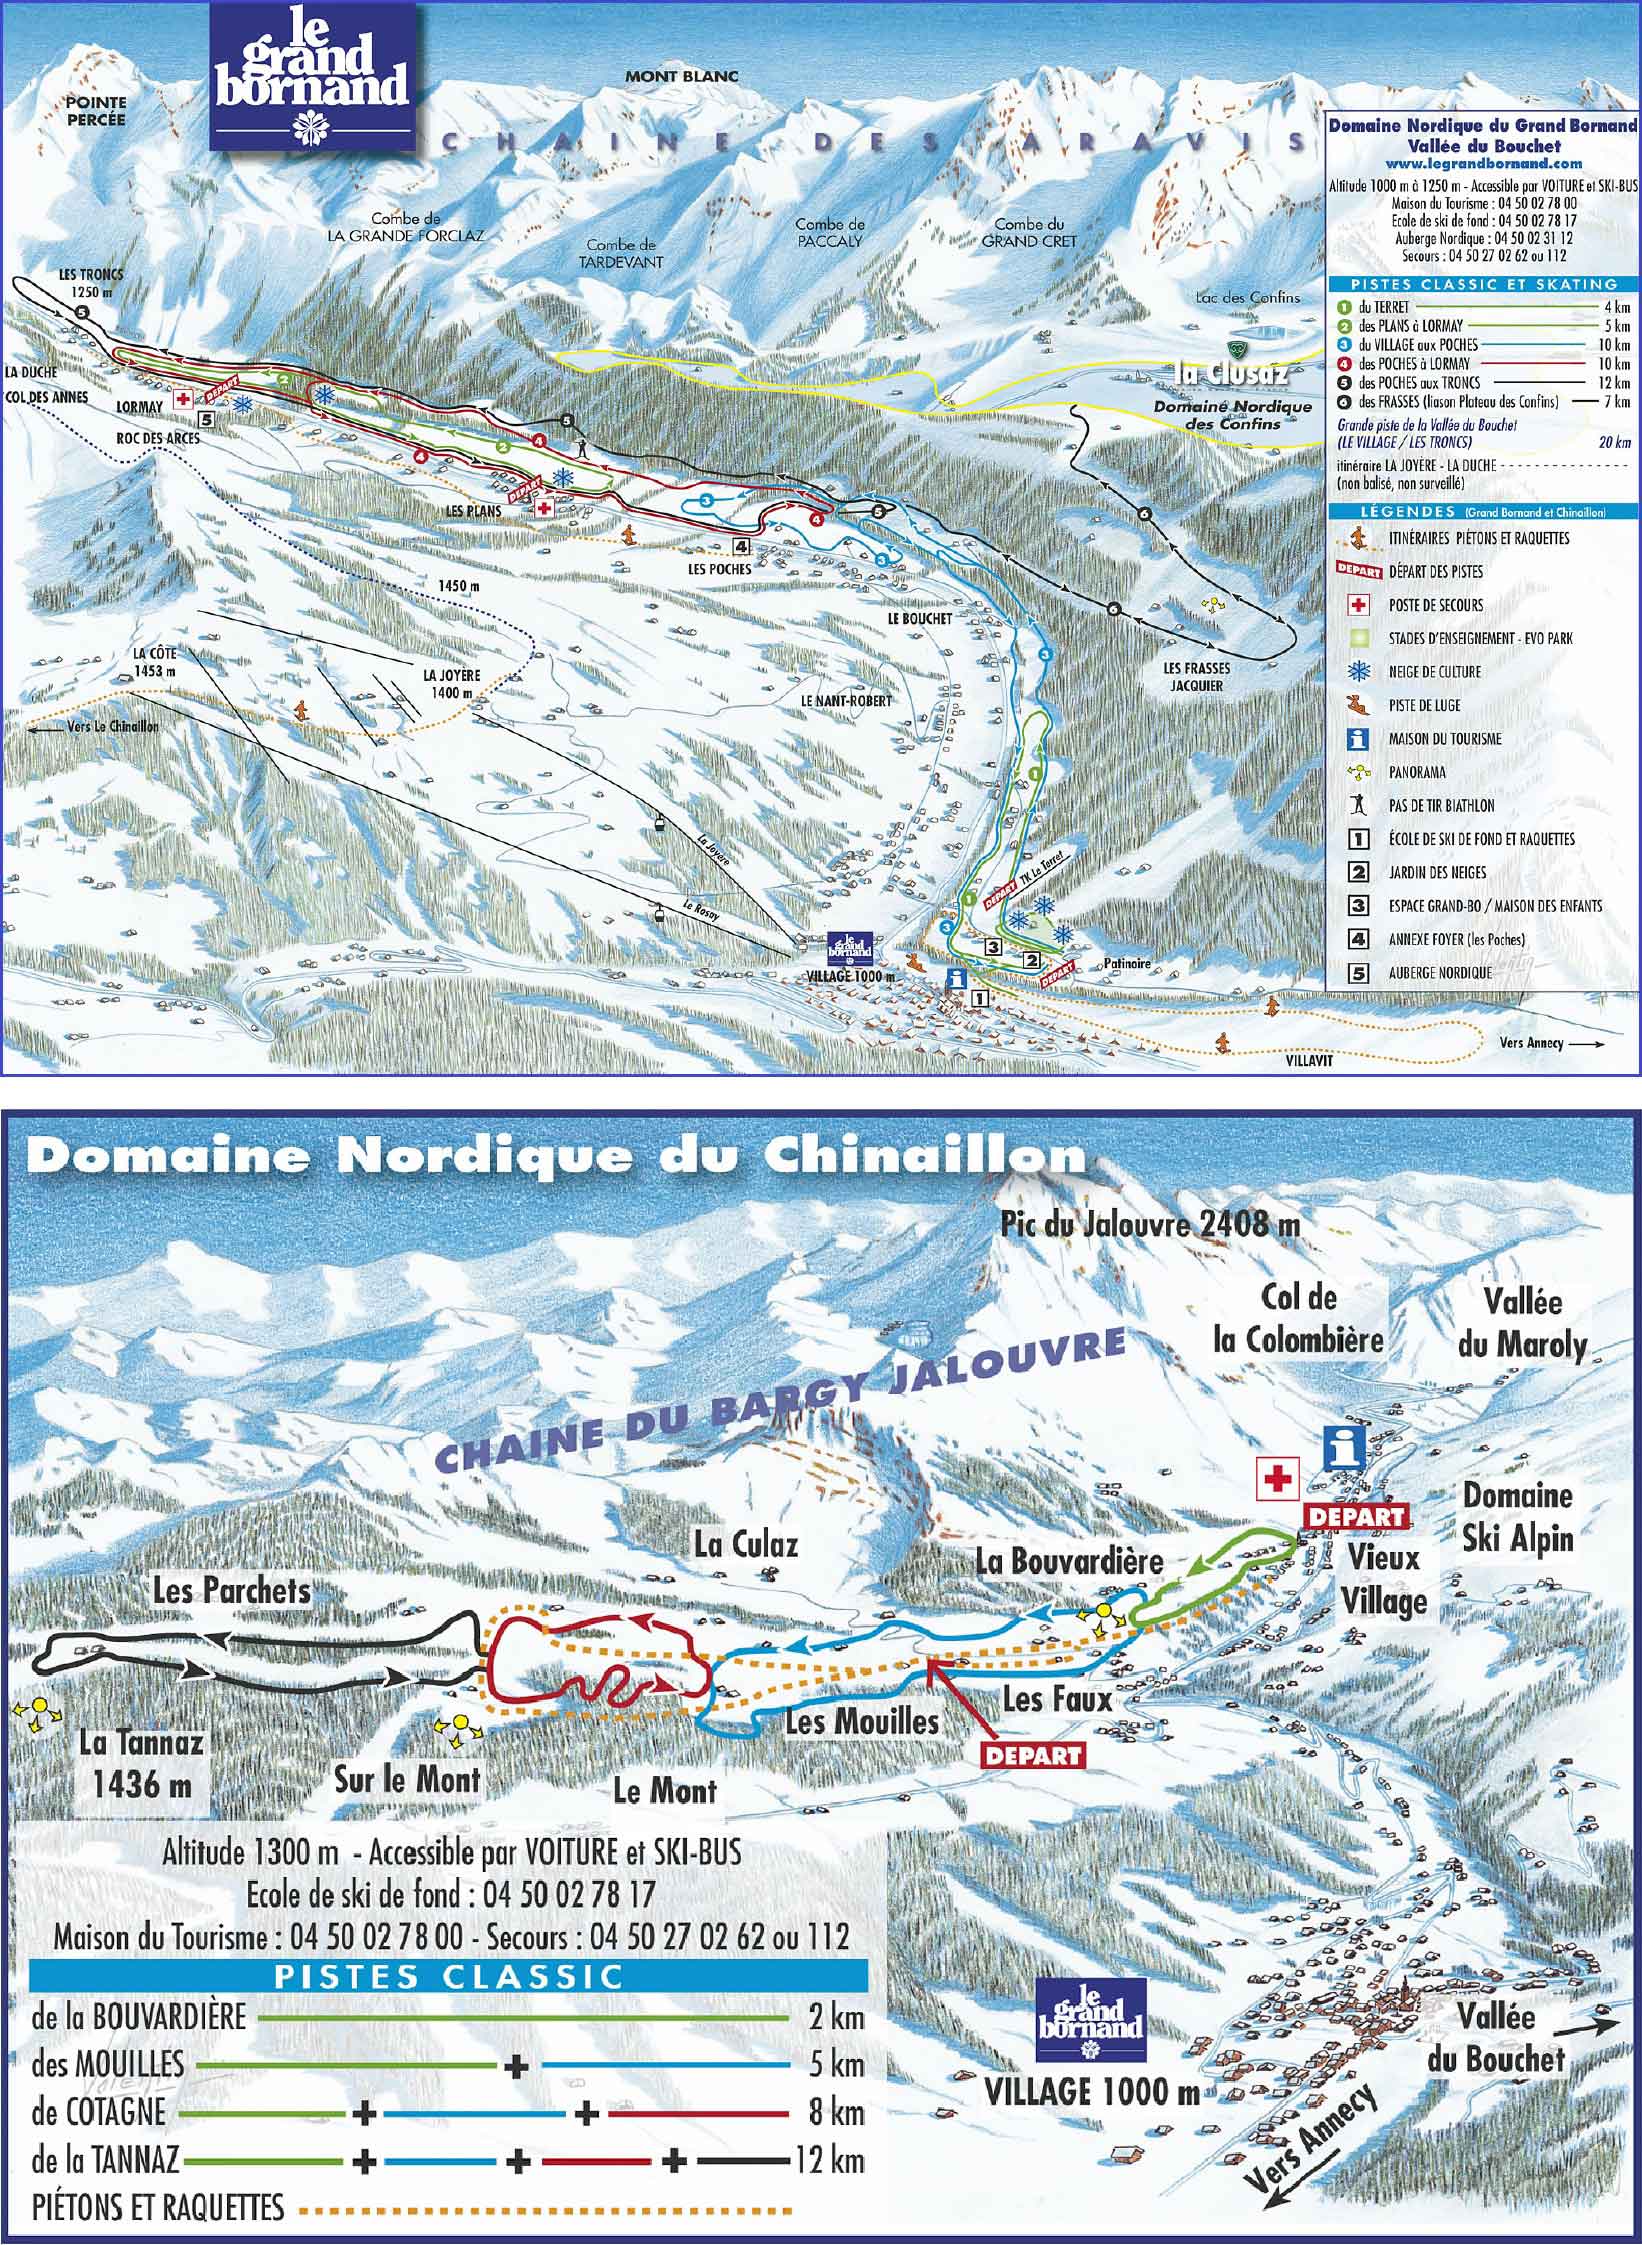 Le Grand Bornand plan des pistes de ski de fond